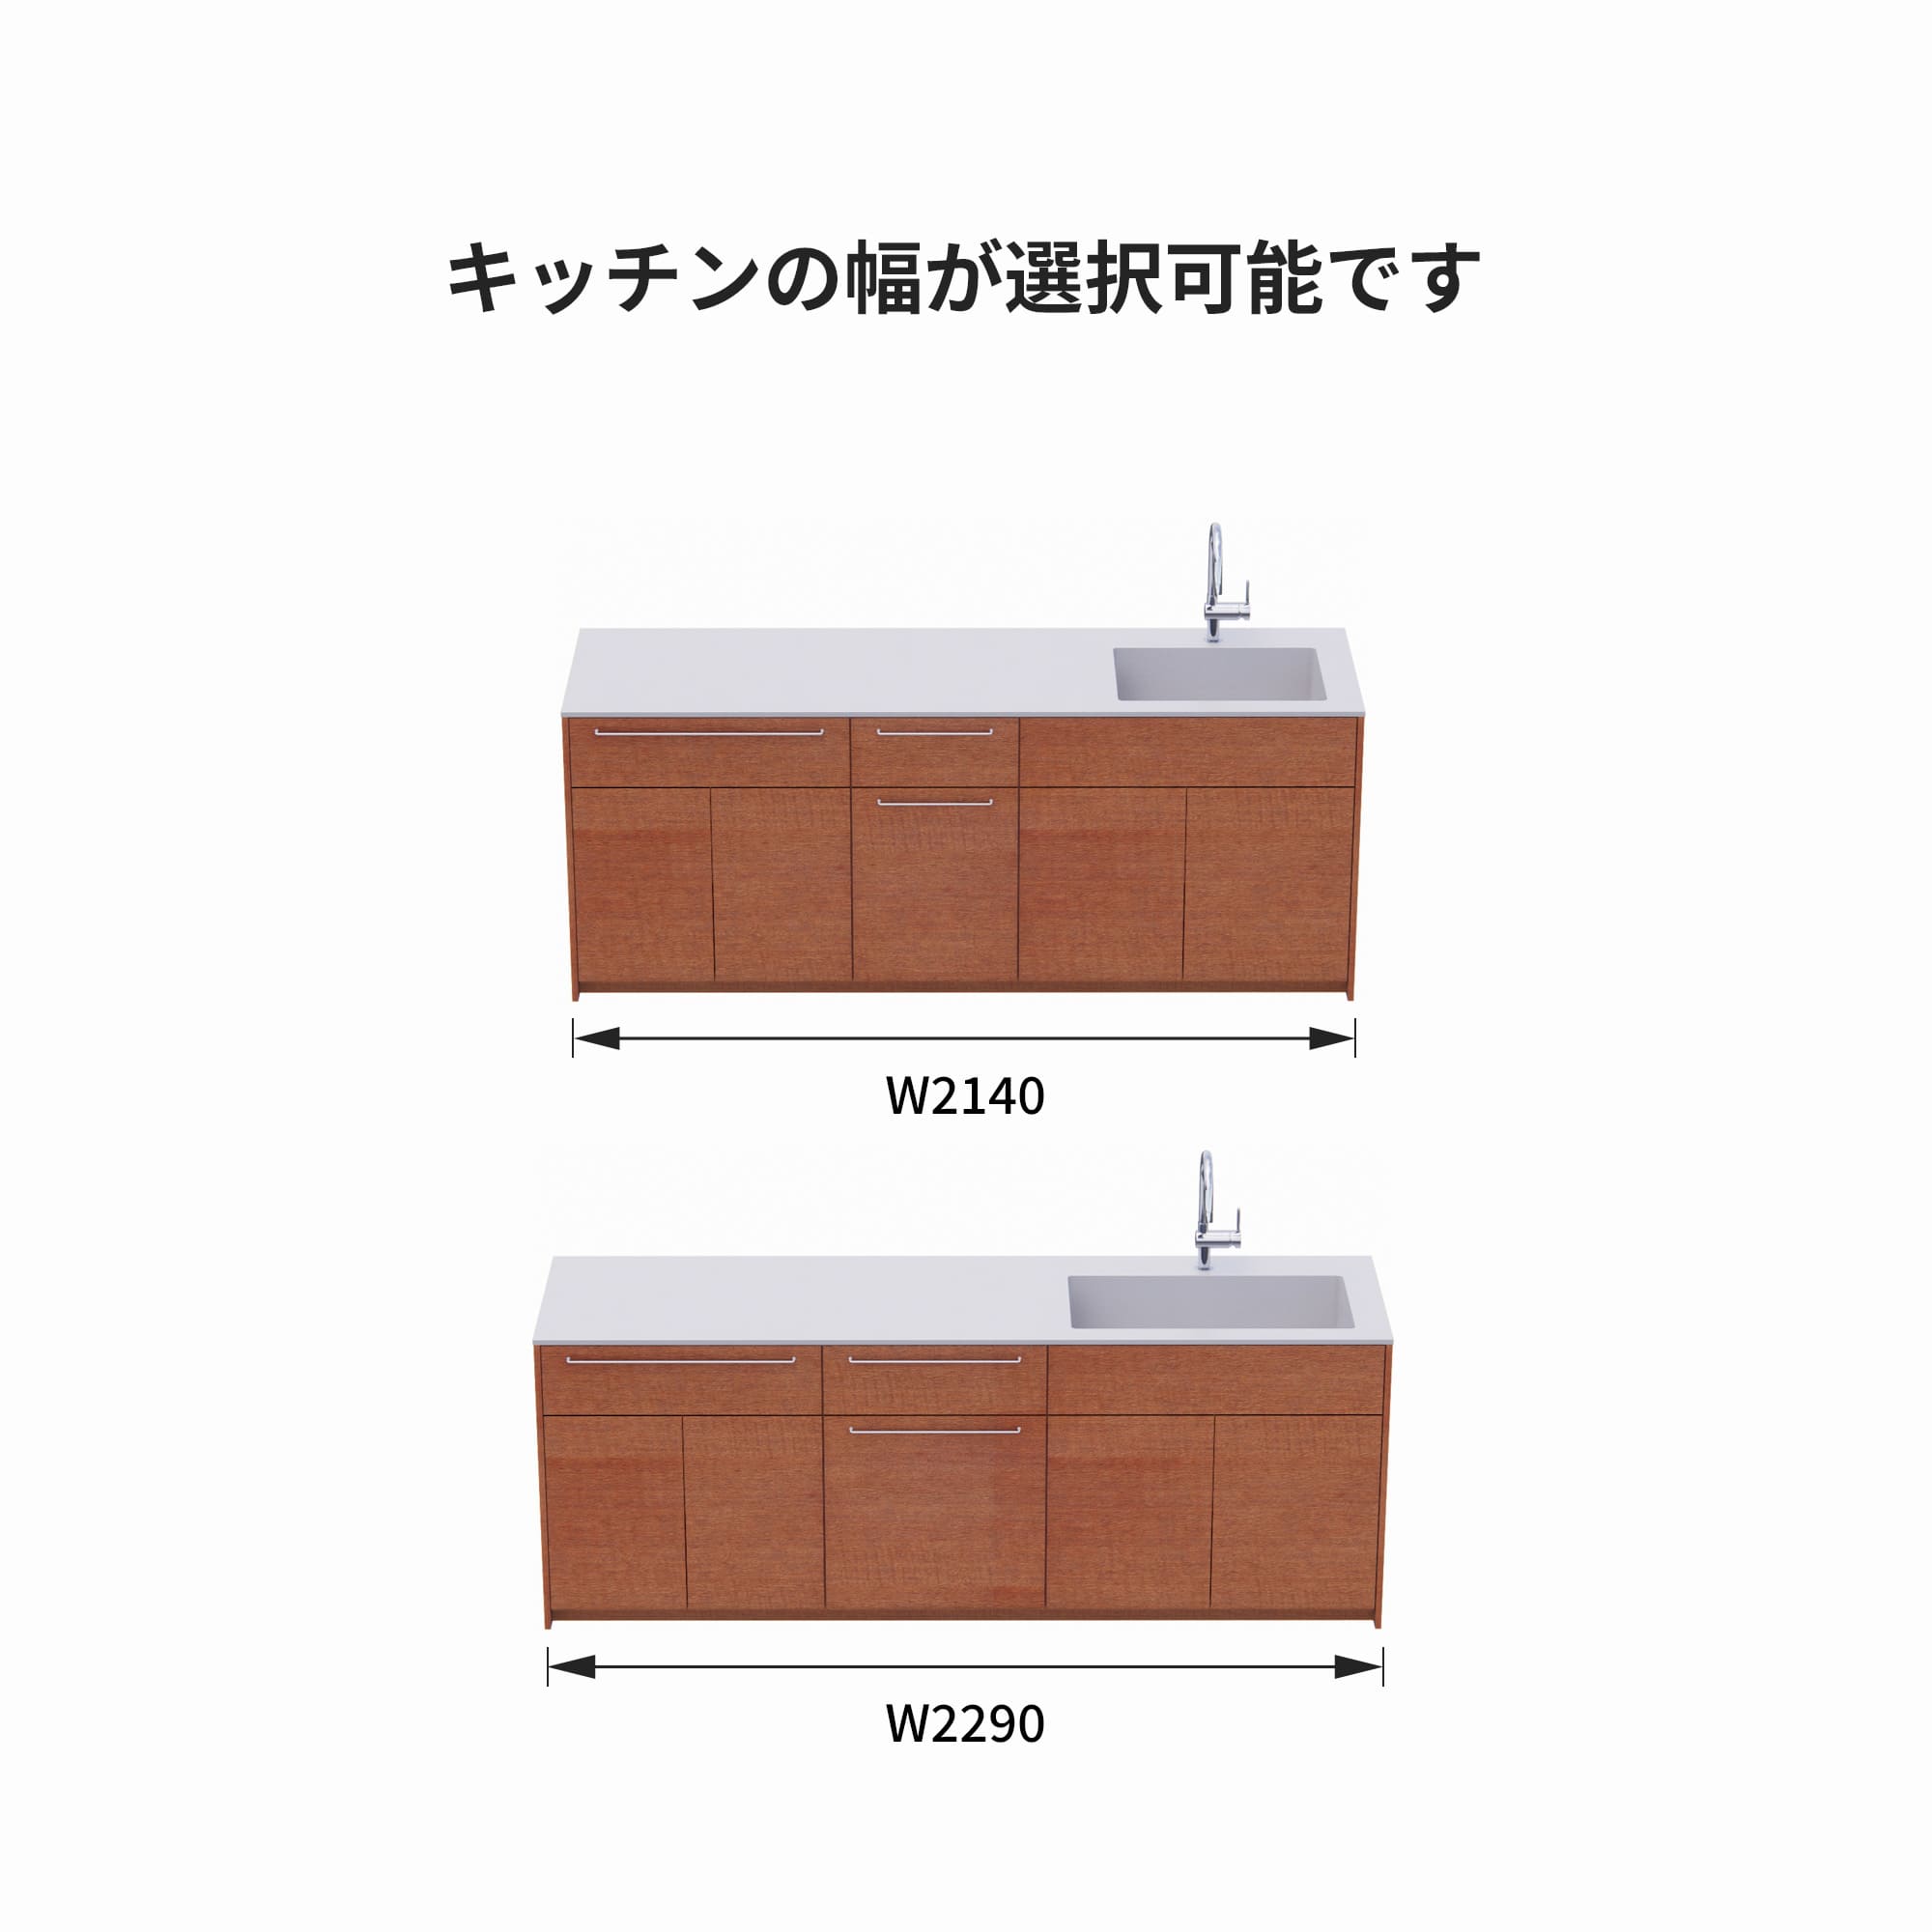 木製システムキッチン 対面型 W2140～2290・コンロなし / オーブンなし / 食洗機なし KB-KC022-36-G183 サイズはW2140と2290から選択可能です